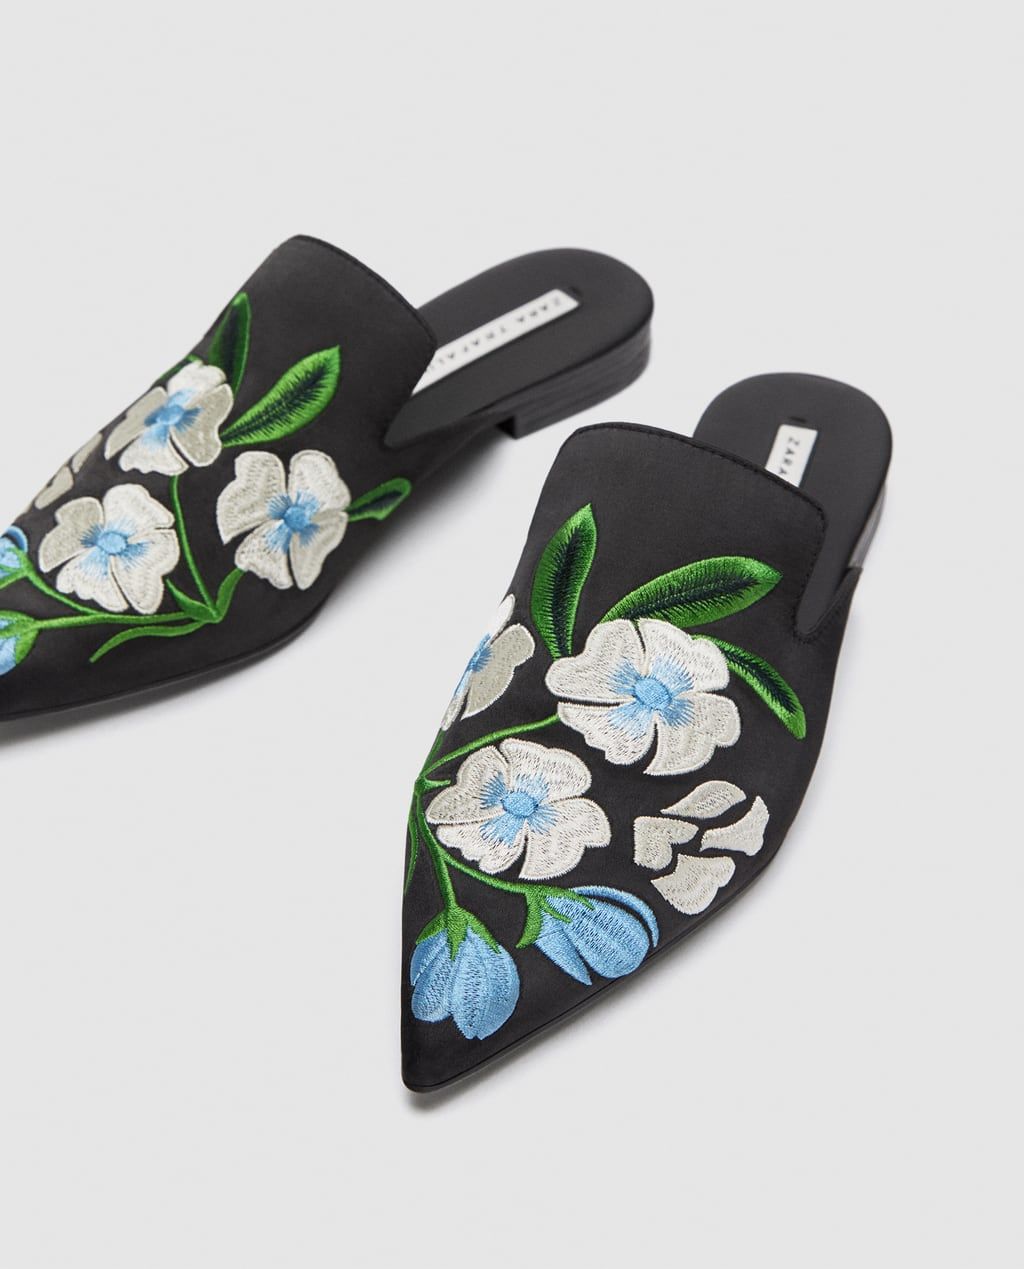 Designer-Inspired Spring/Summer 18' Shoe Dupes For Less! - Viva Kallisté